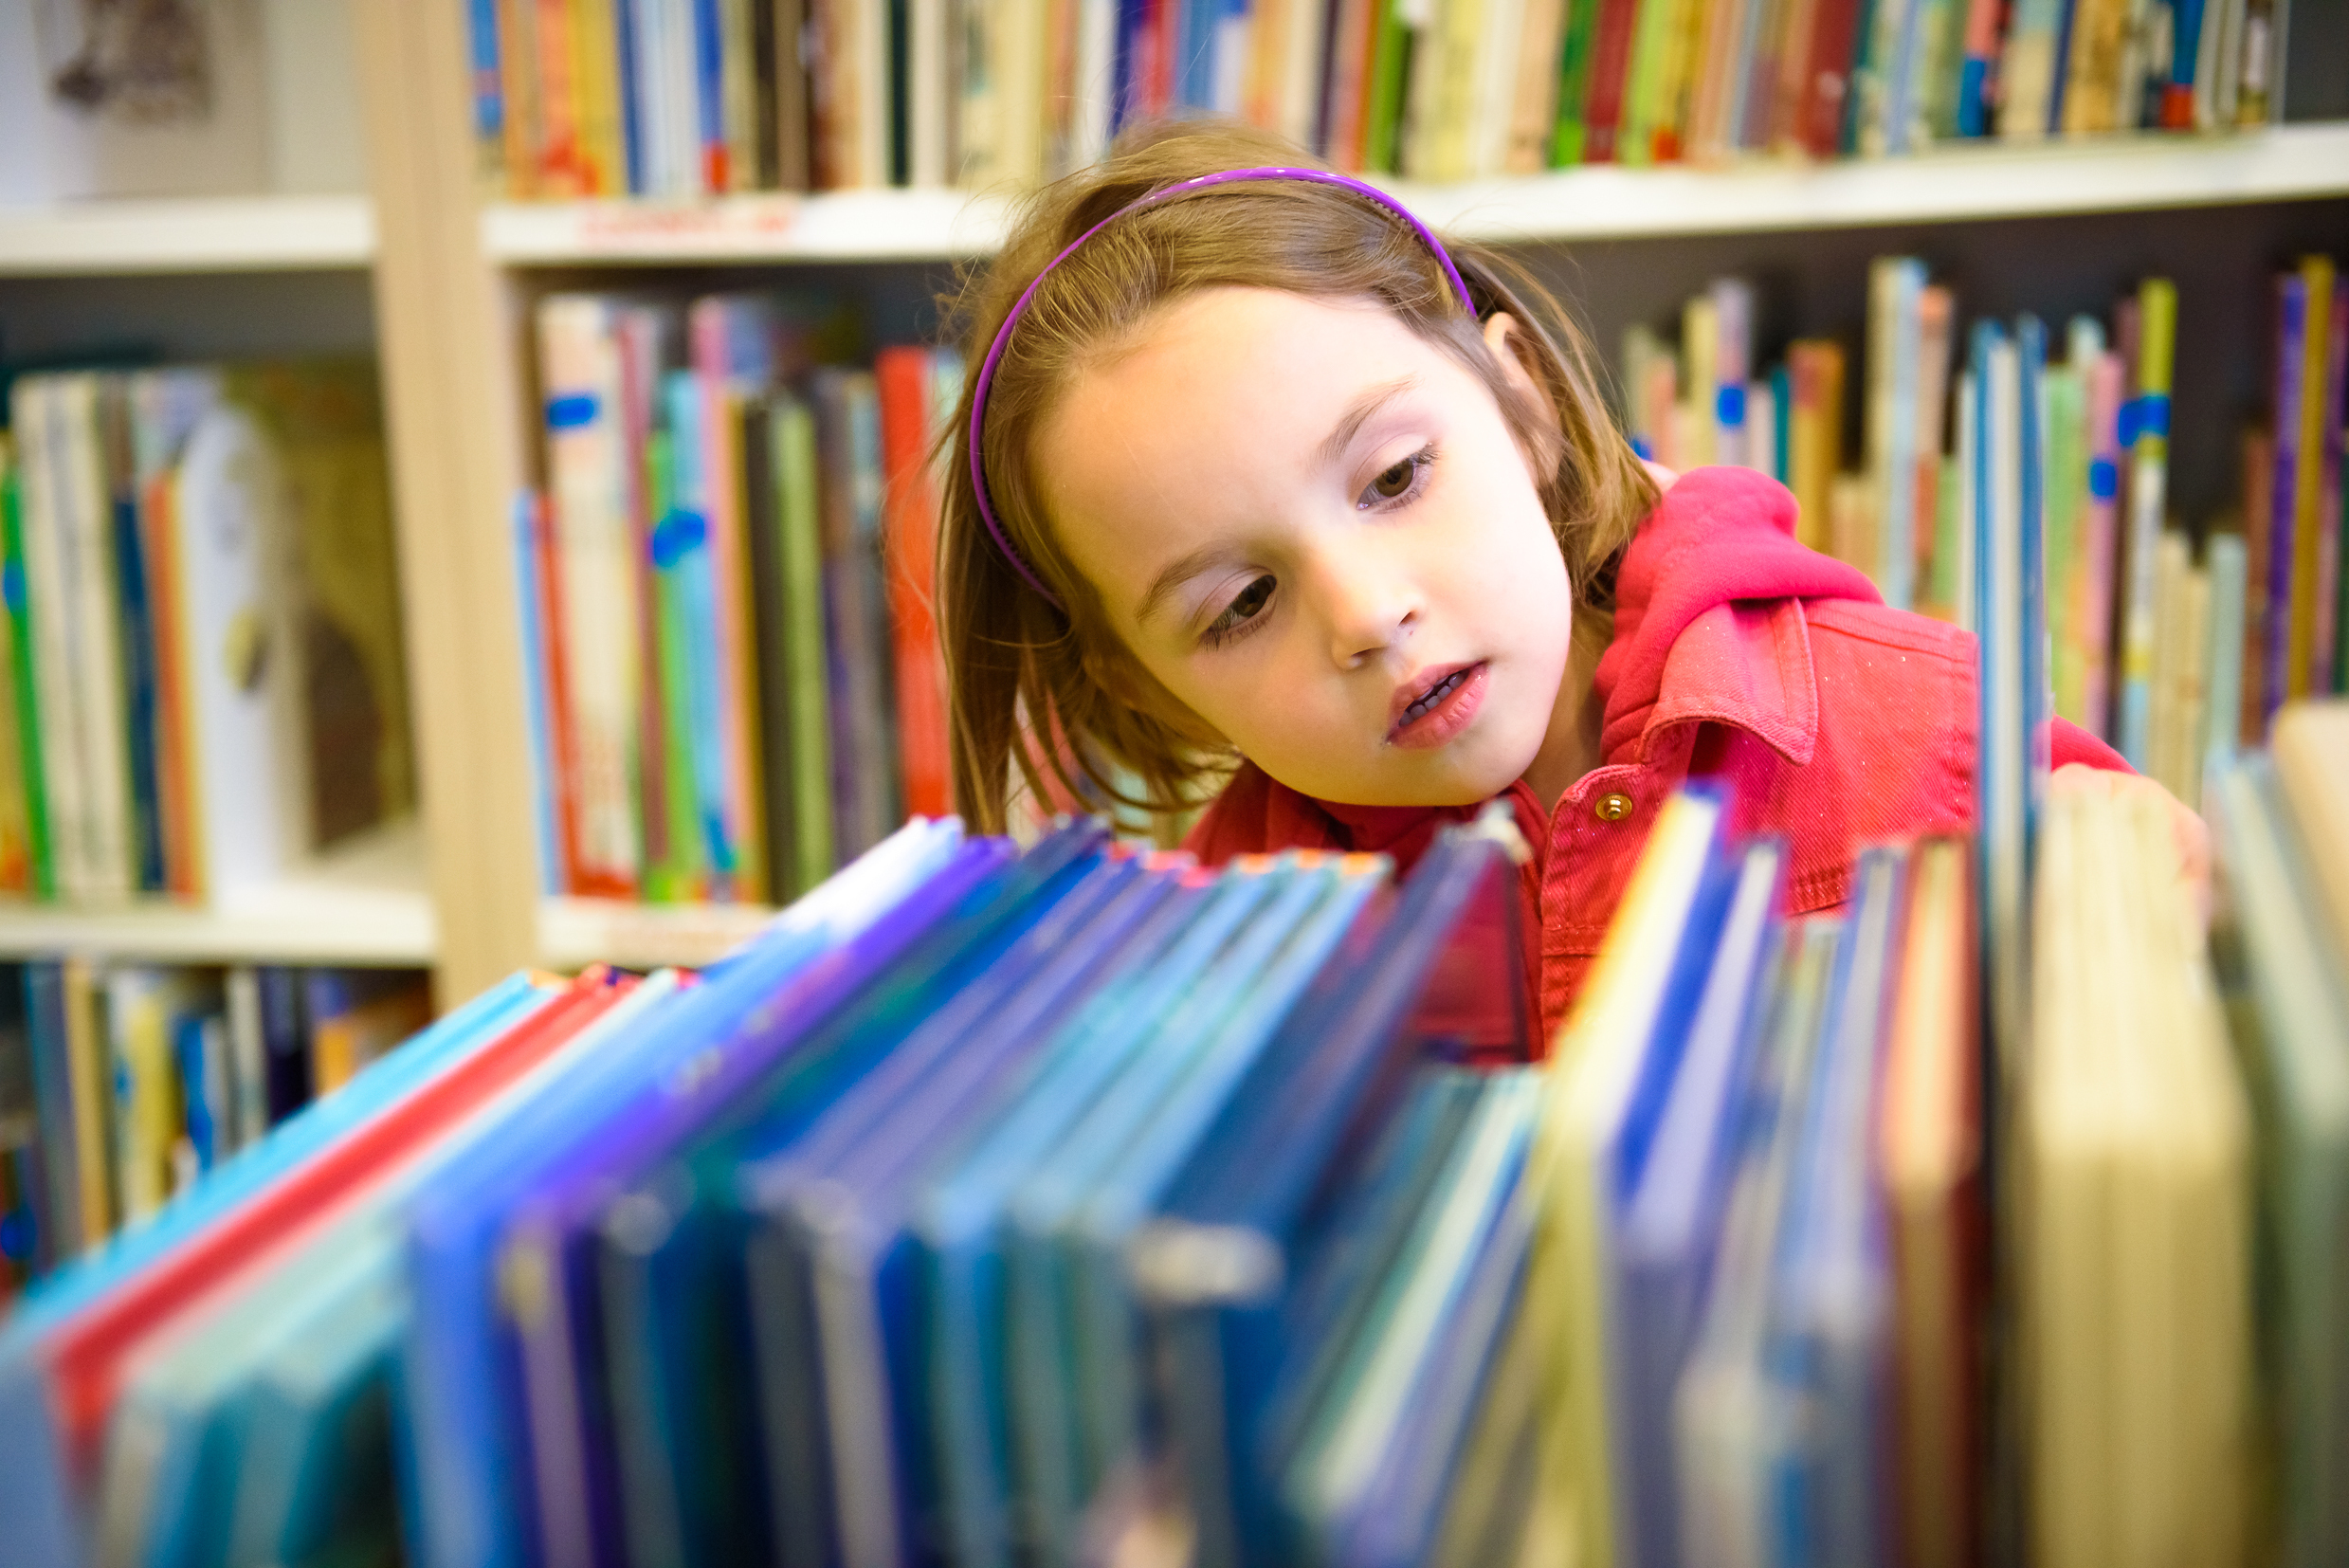 Uma menina em uma biblioteca | Fonte: Shutterstock